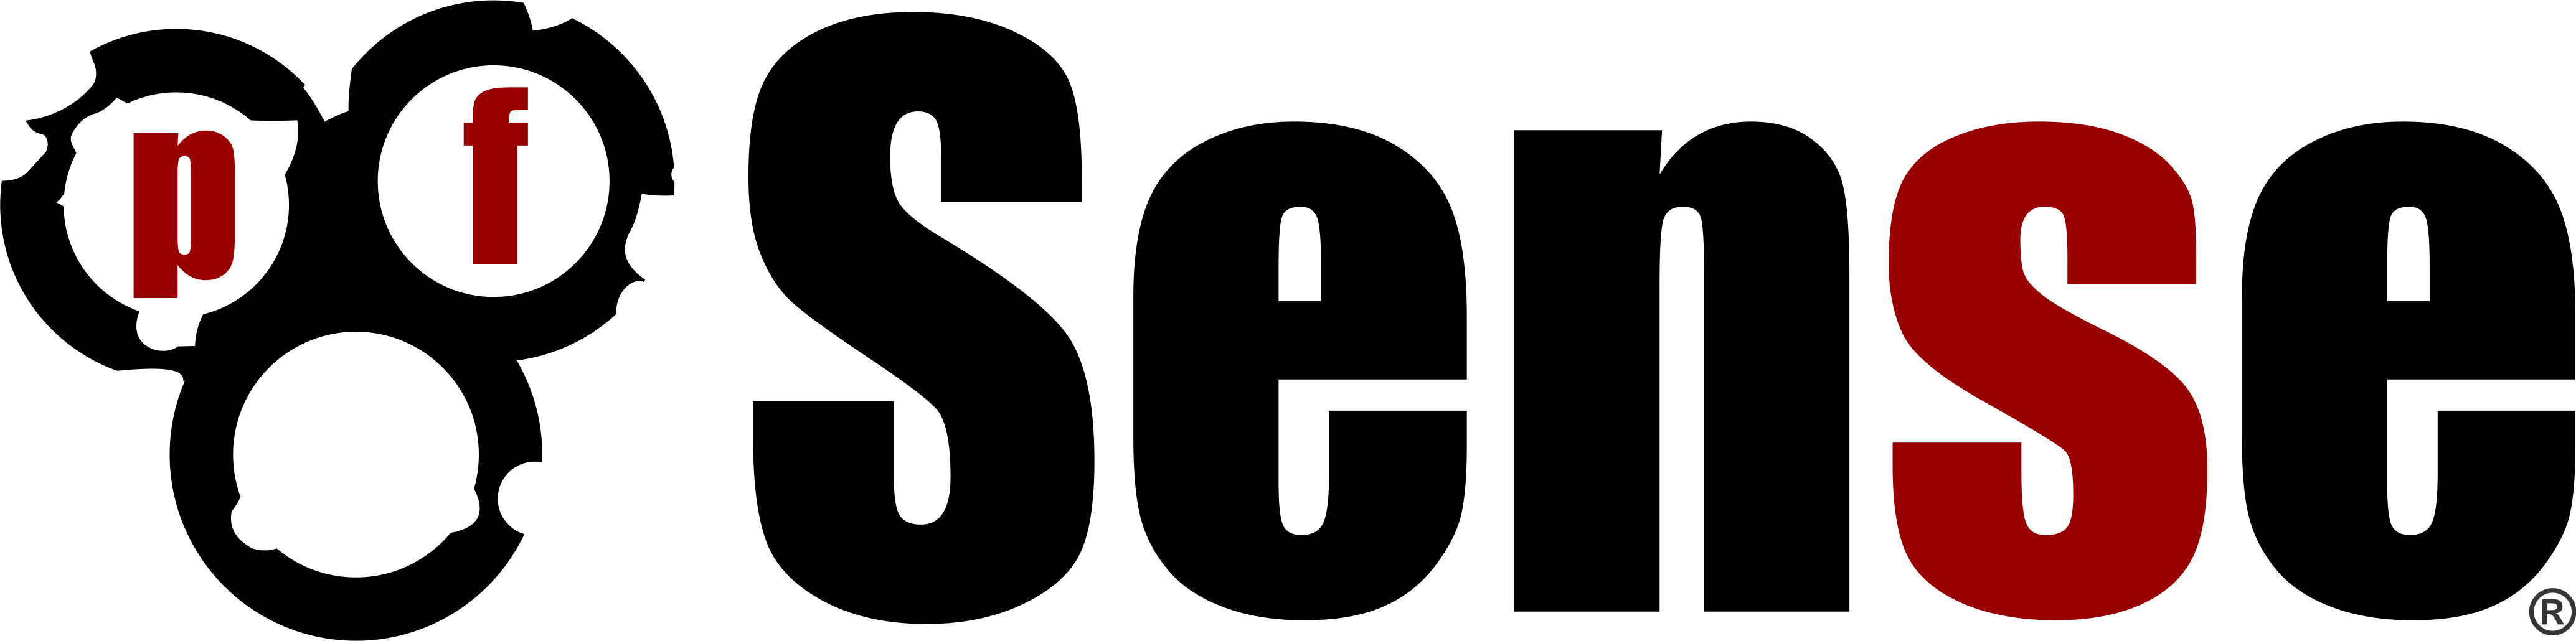 Das offizielle Logo von pfSense, einem bekannten Open-Source-Firewall- und Router-Softwareprojekt.